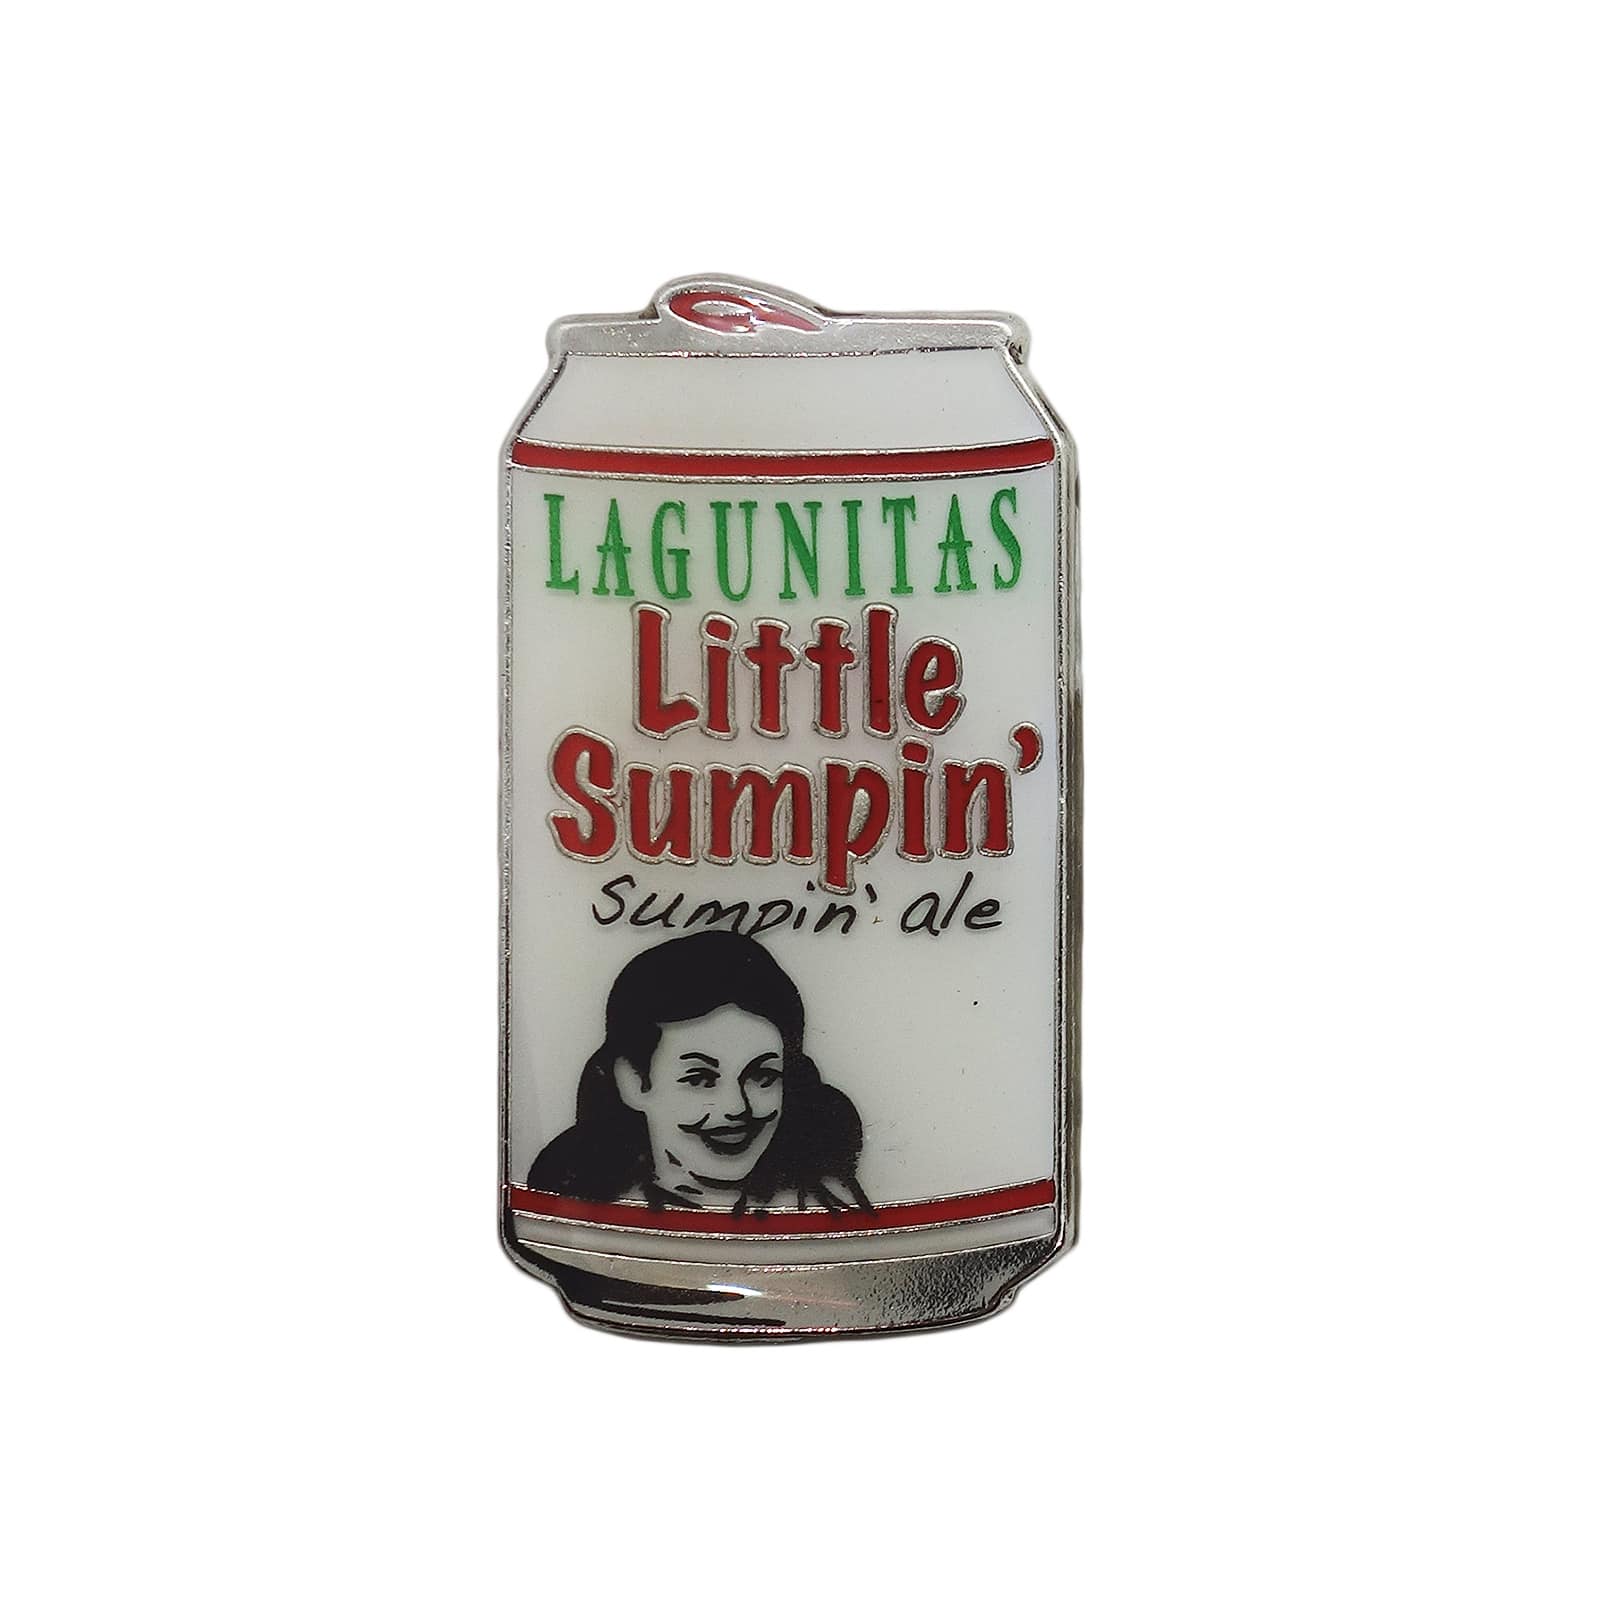 LAGUNITAS リトルサンピン サンピンエール ピンズ ラグニタス ビール 留め具付き